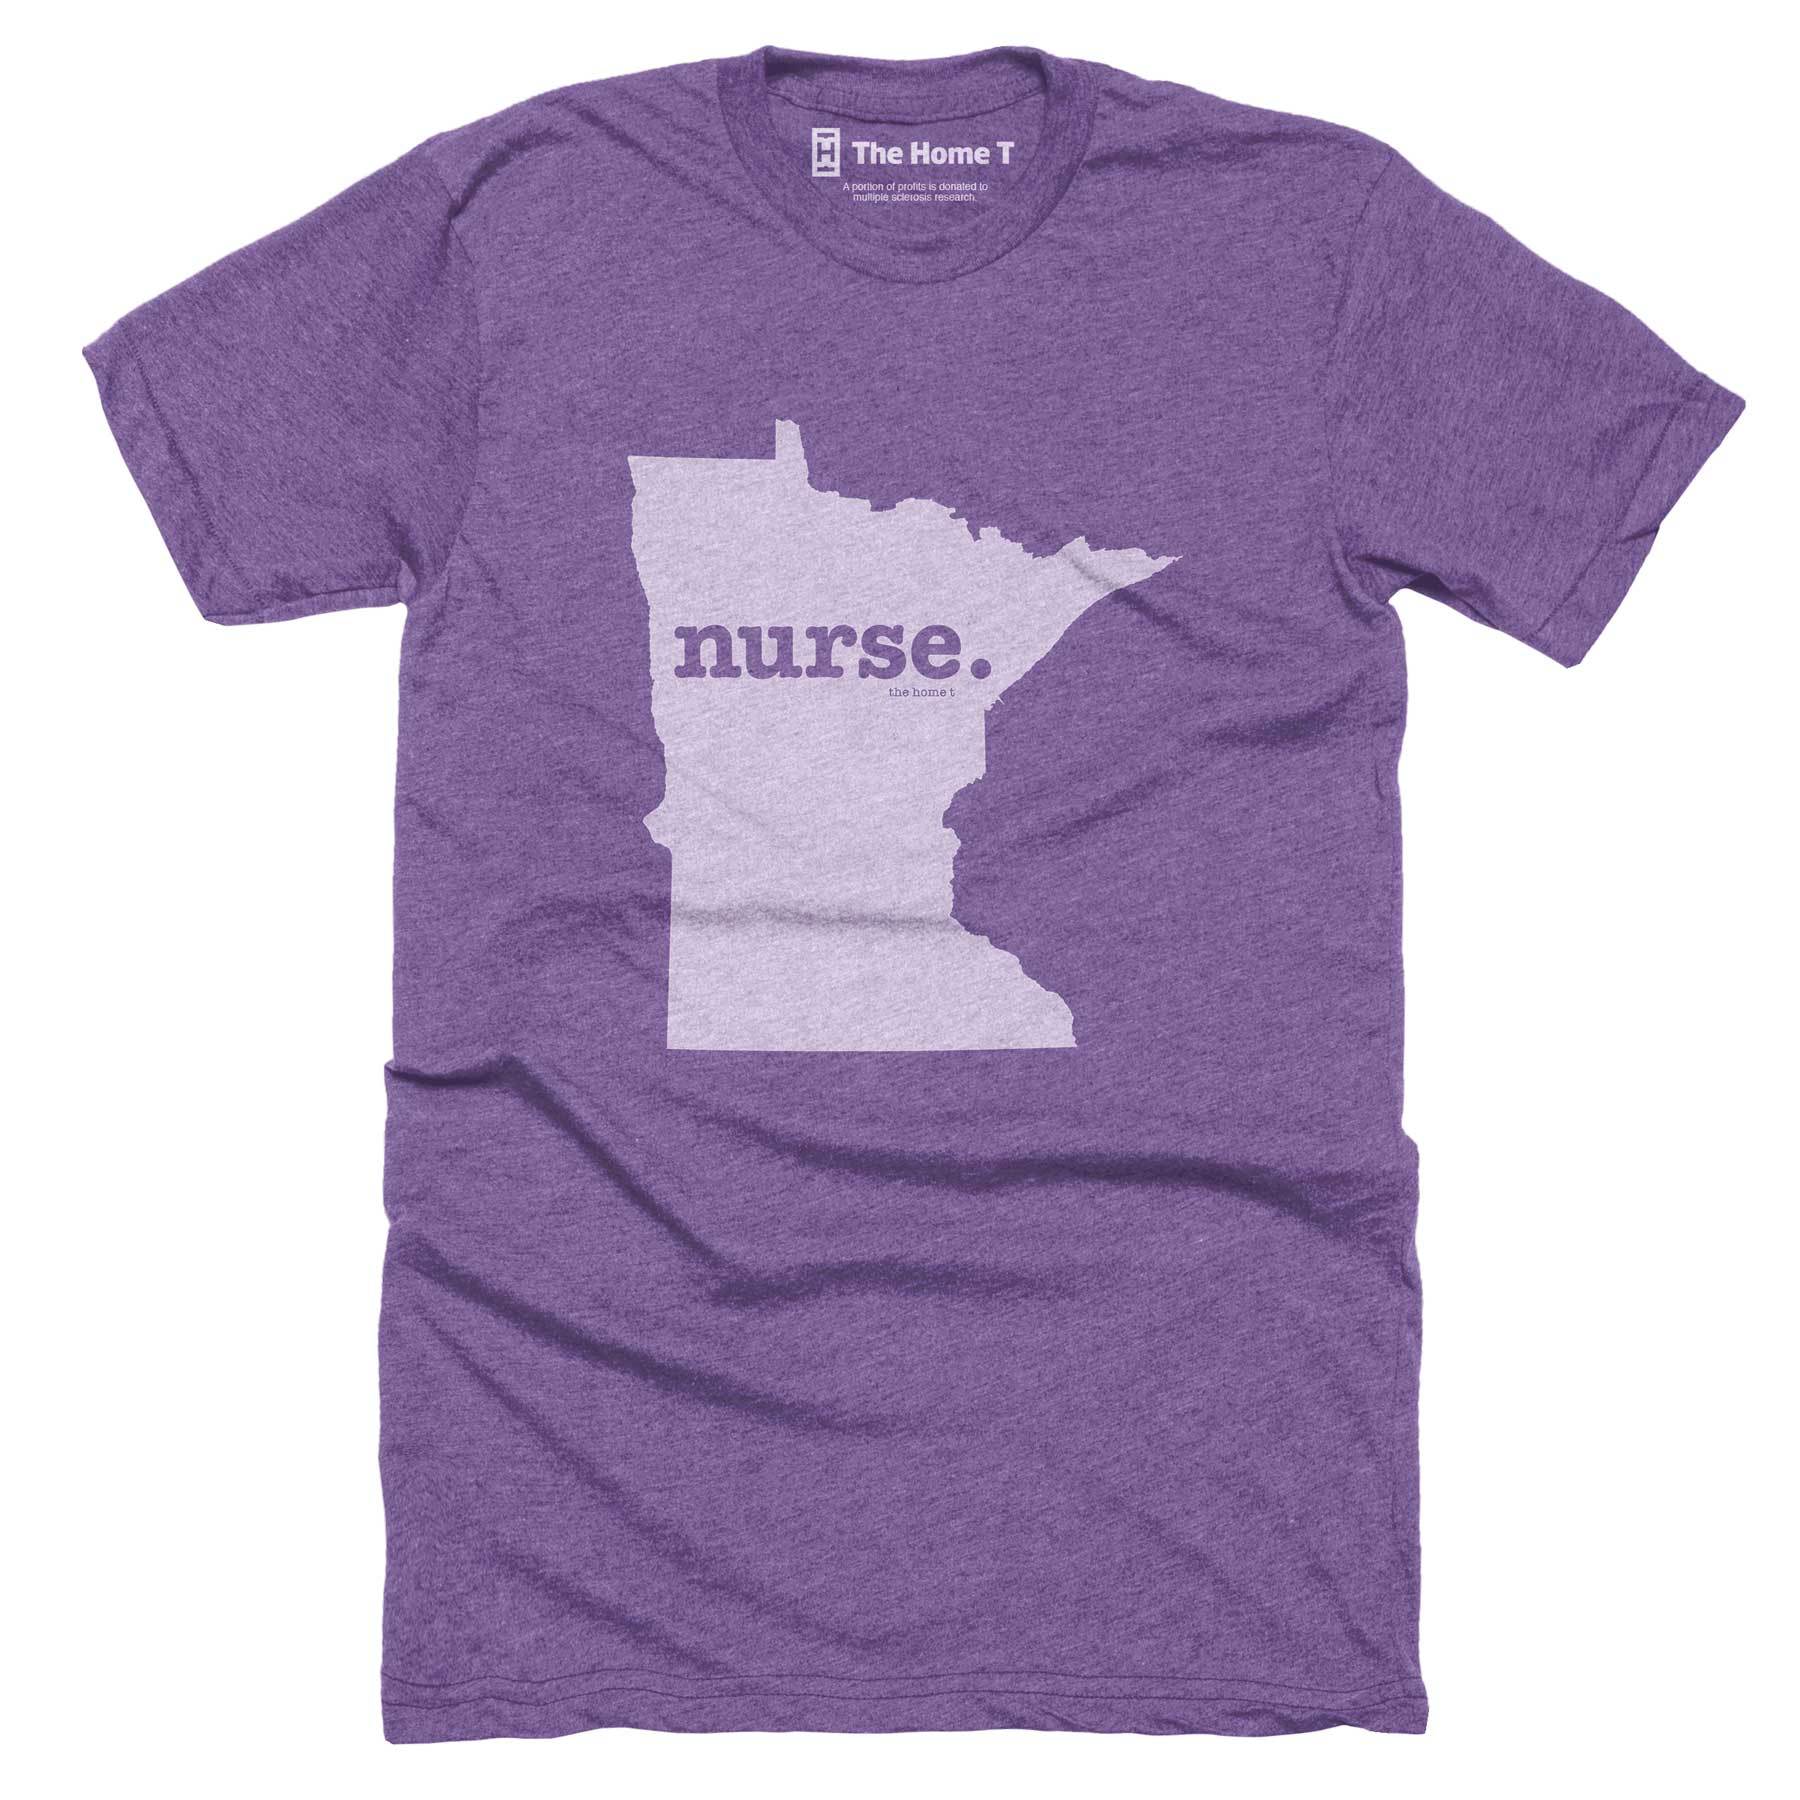 Minnesota Nurse Home T-Shirt Occupation The Home T